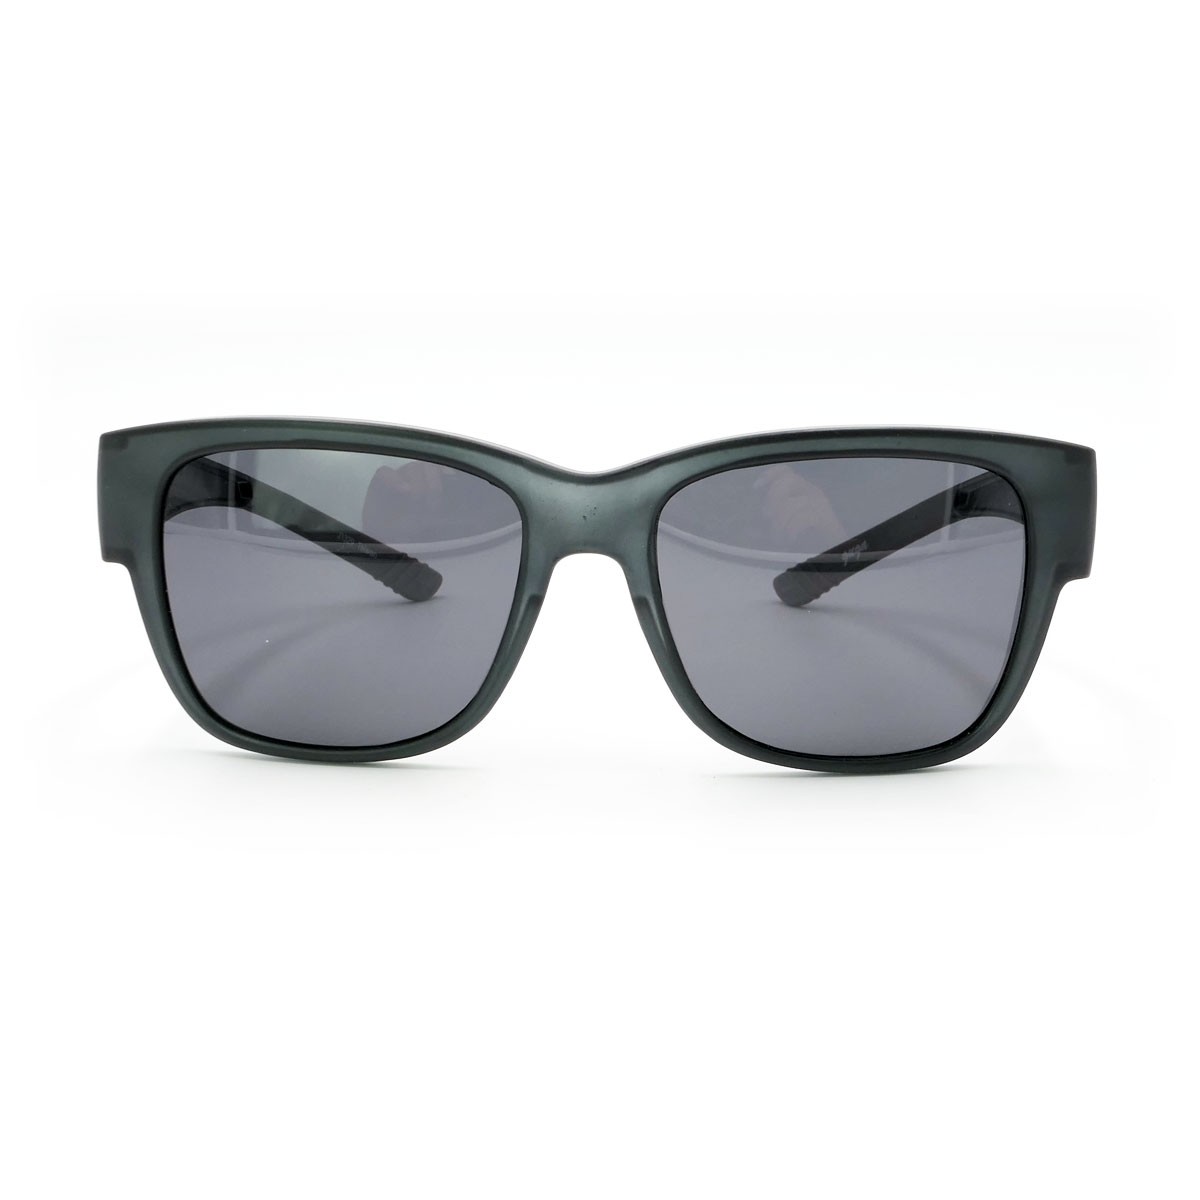 客製化墨鏡，套鏡式偏光太陽眼鏡，近視眼鏡可直接配戴